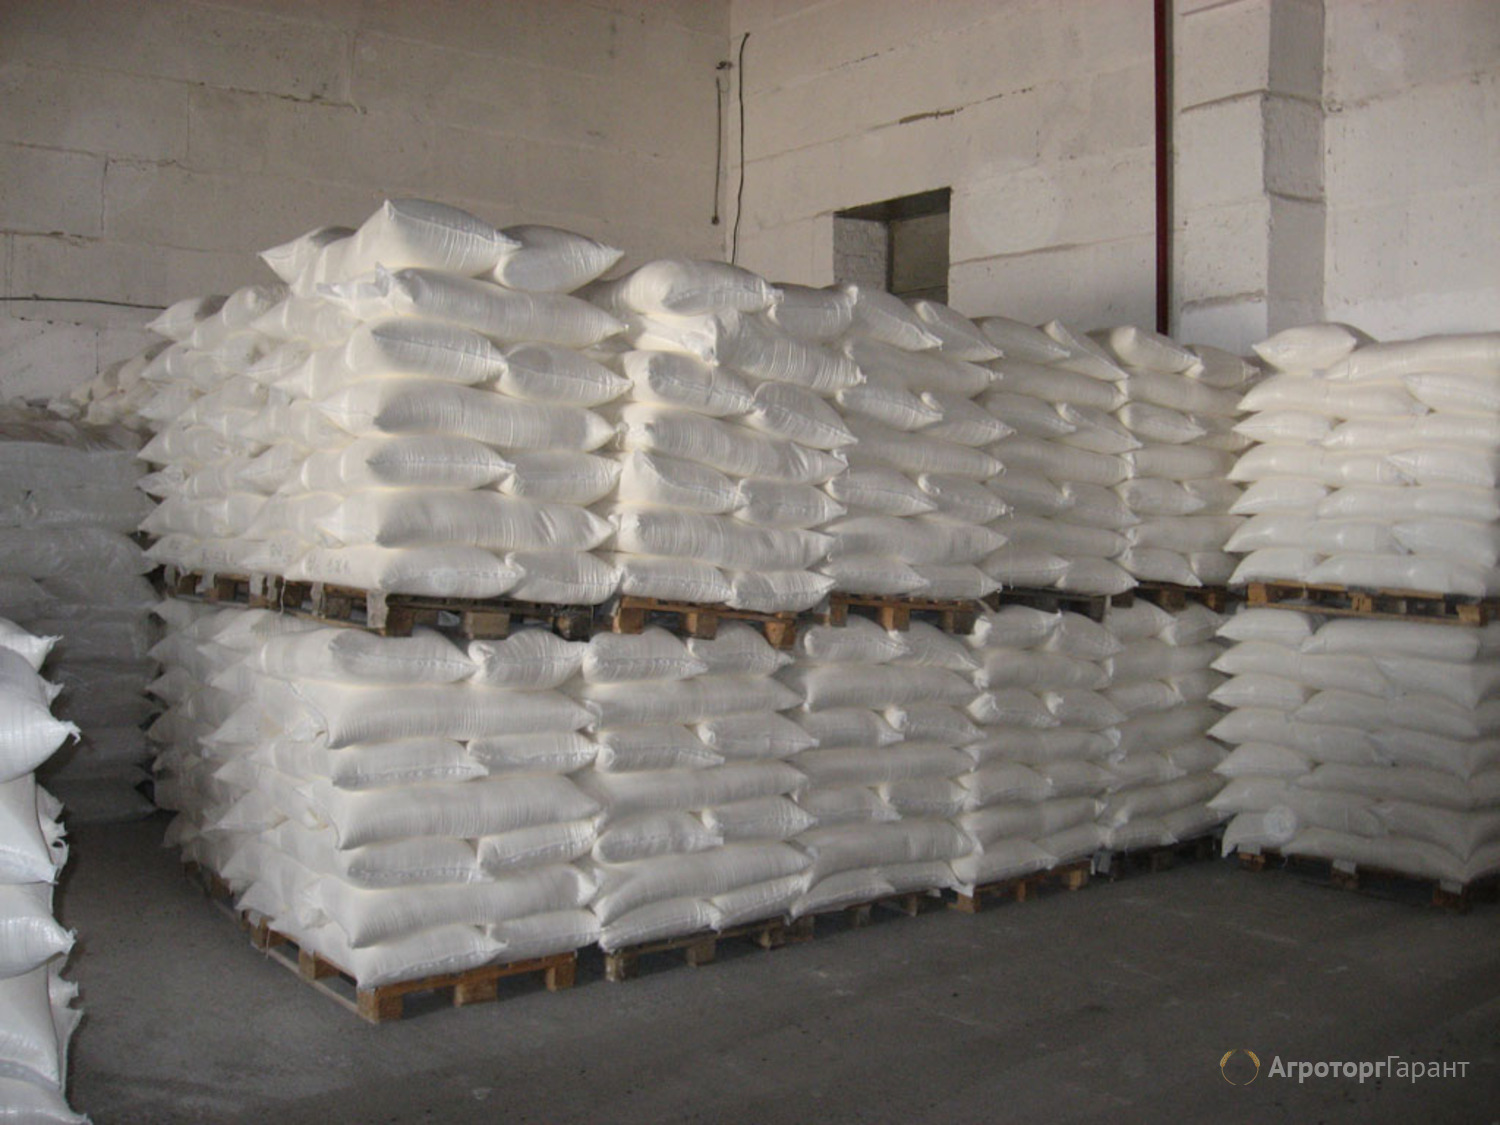 5 тонн 500 кг. Сахар склад мешки 50 кг. Сахар по 50кг на паллете. Сахар мешок. Мешки муки на складе.